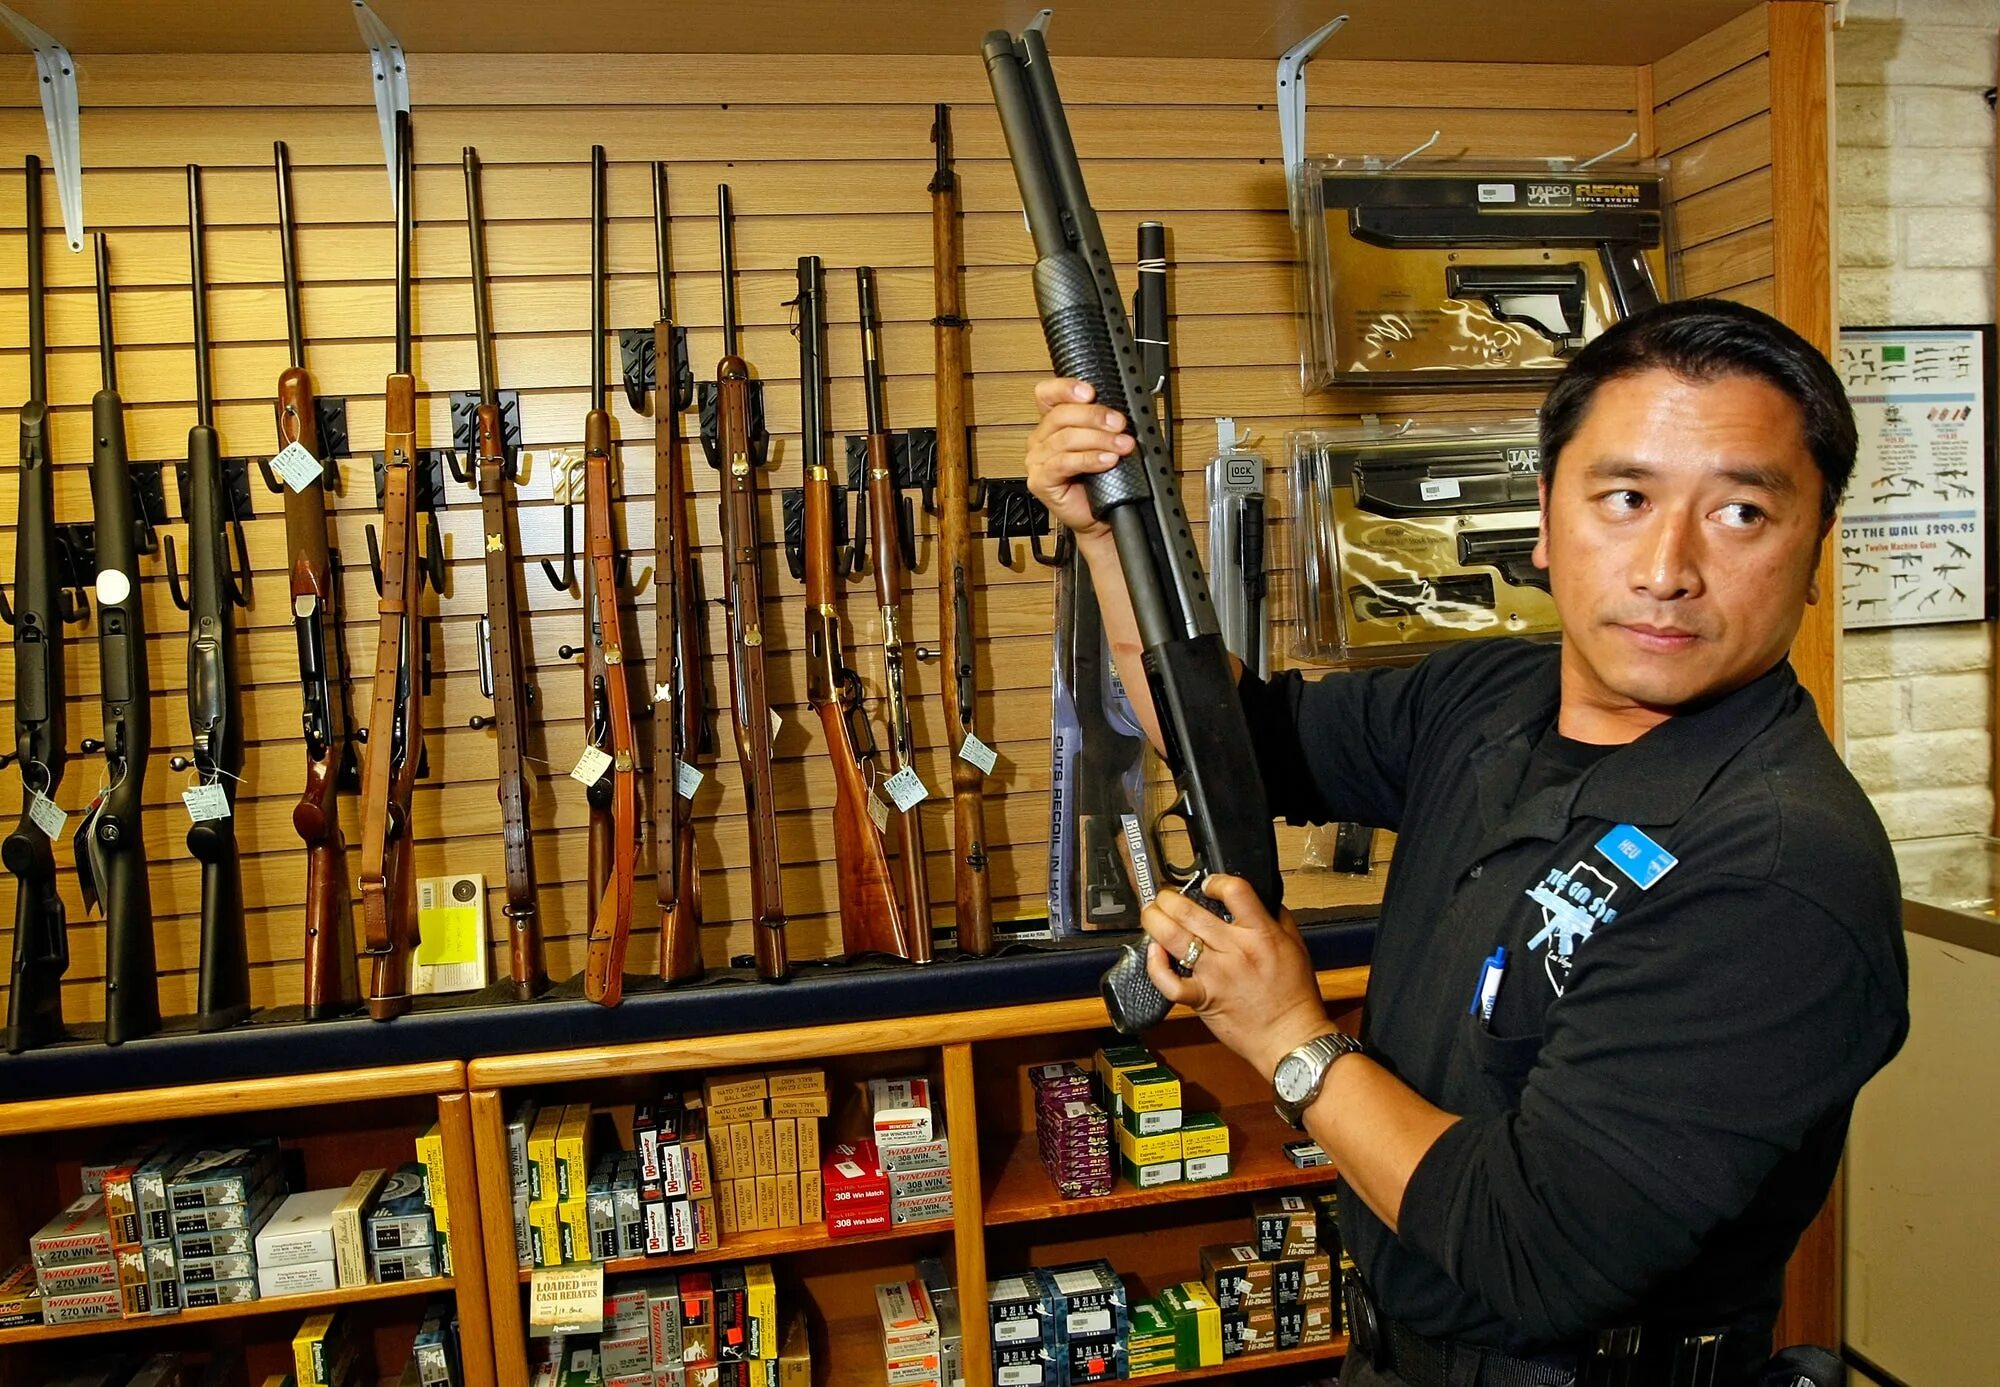 Оружейный магазин в Америке. Магазин оружия в США. Американские оружейные магазины. Человек с огнестрельным оружием.